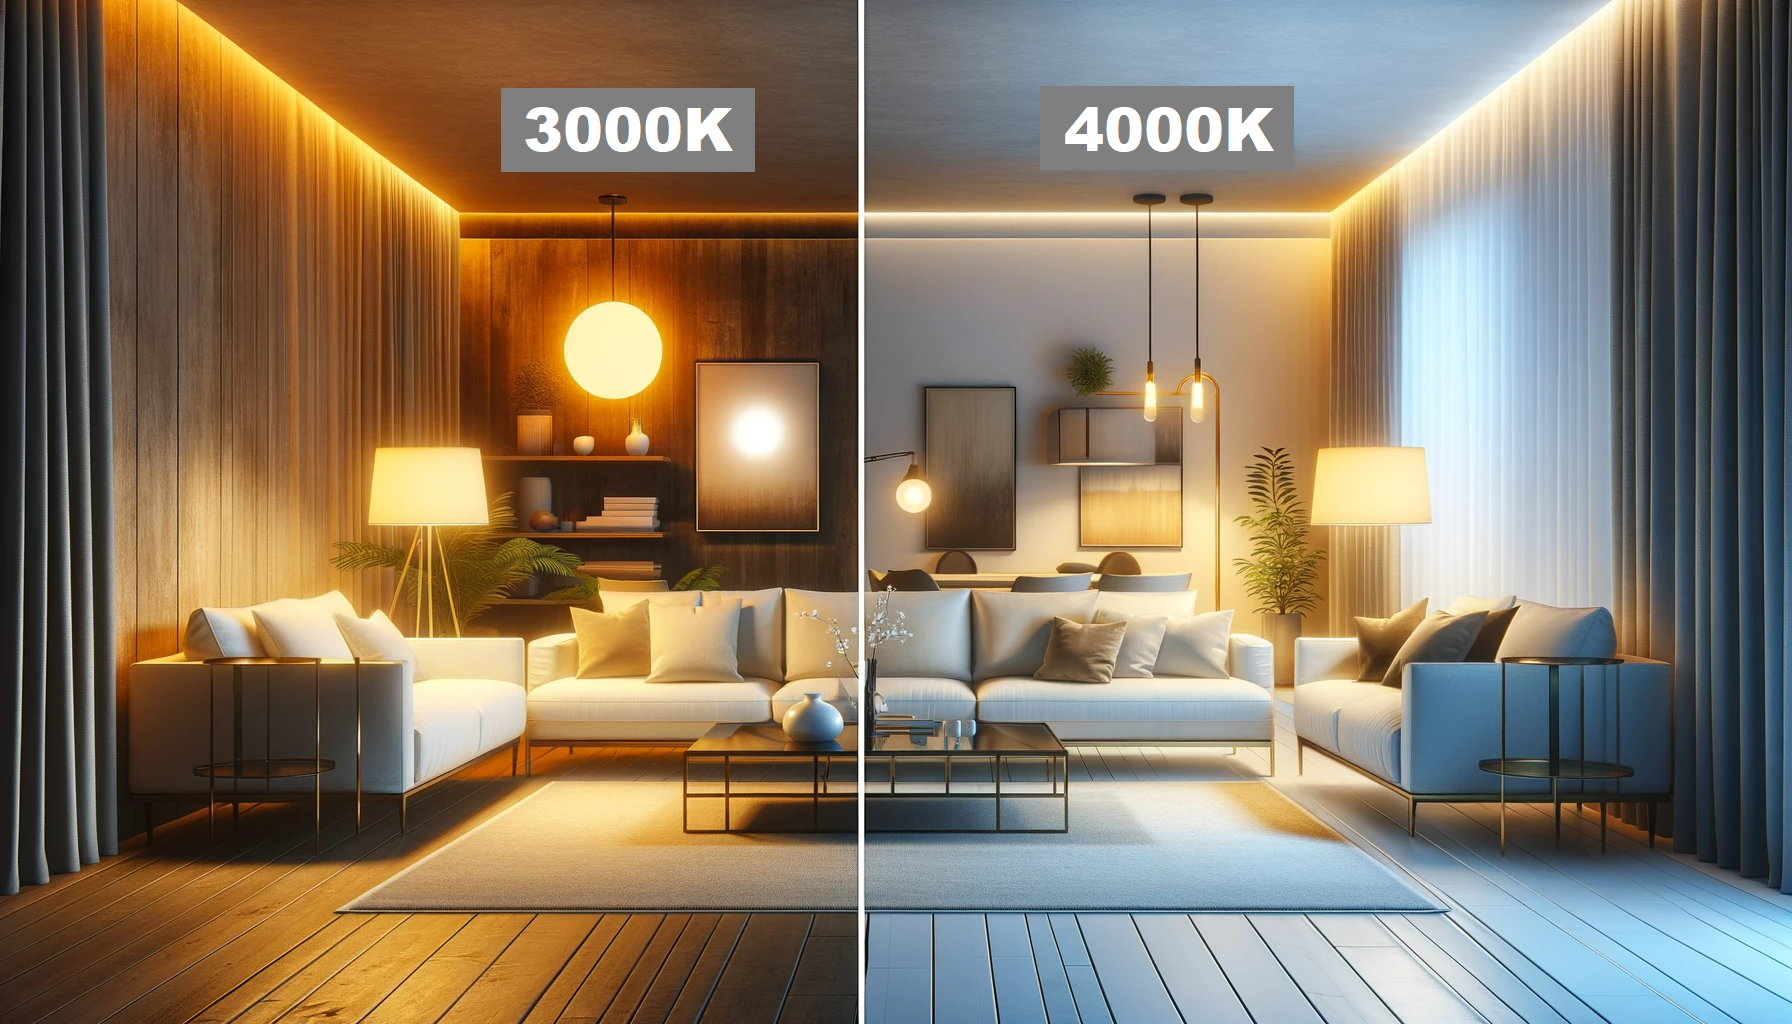 Choosing light colour 3000k vs. 4000k